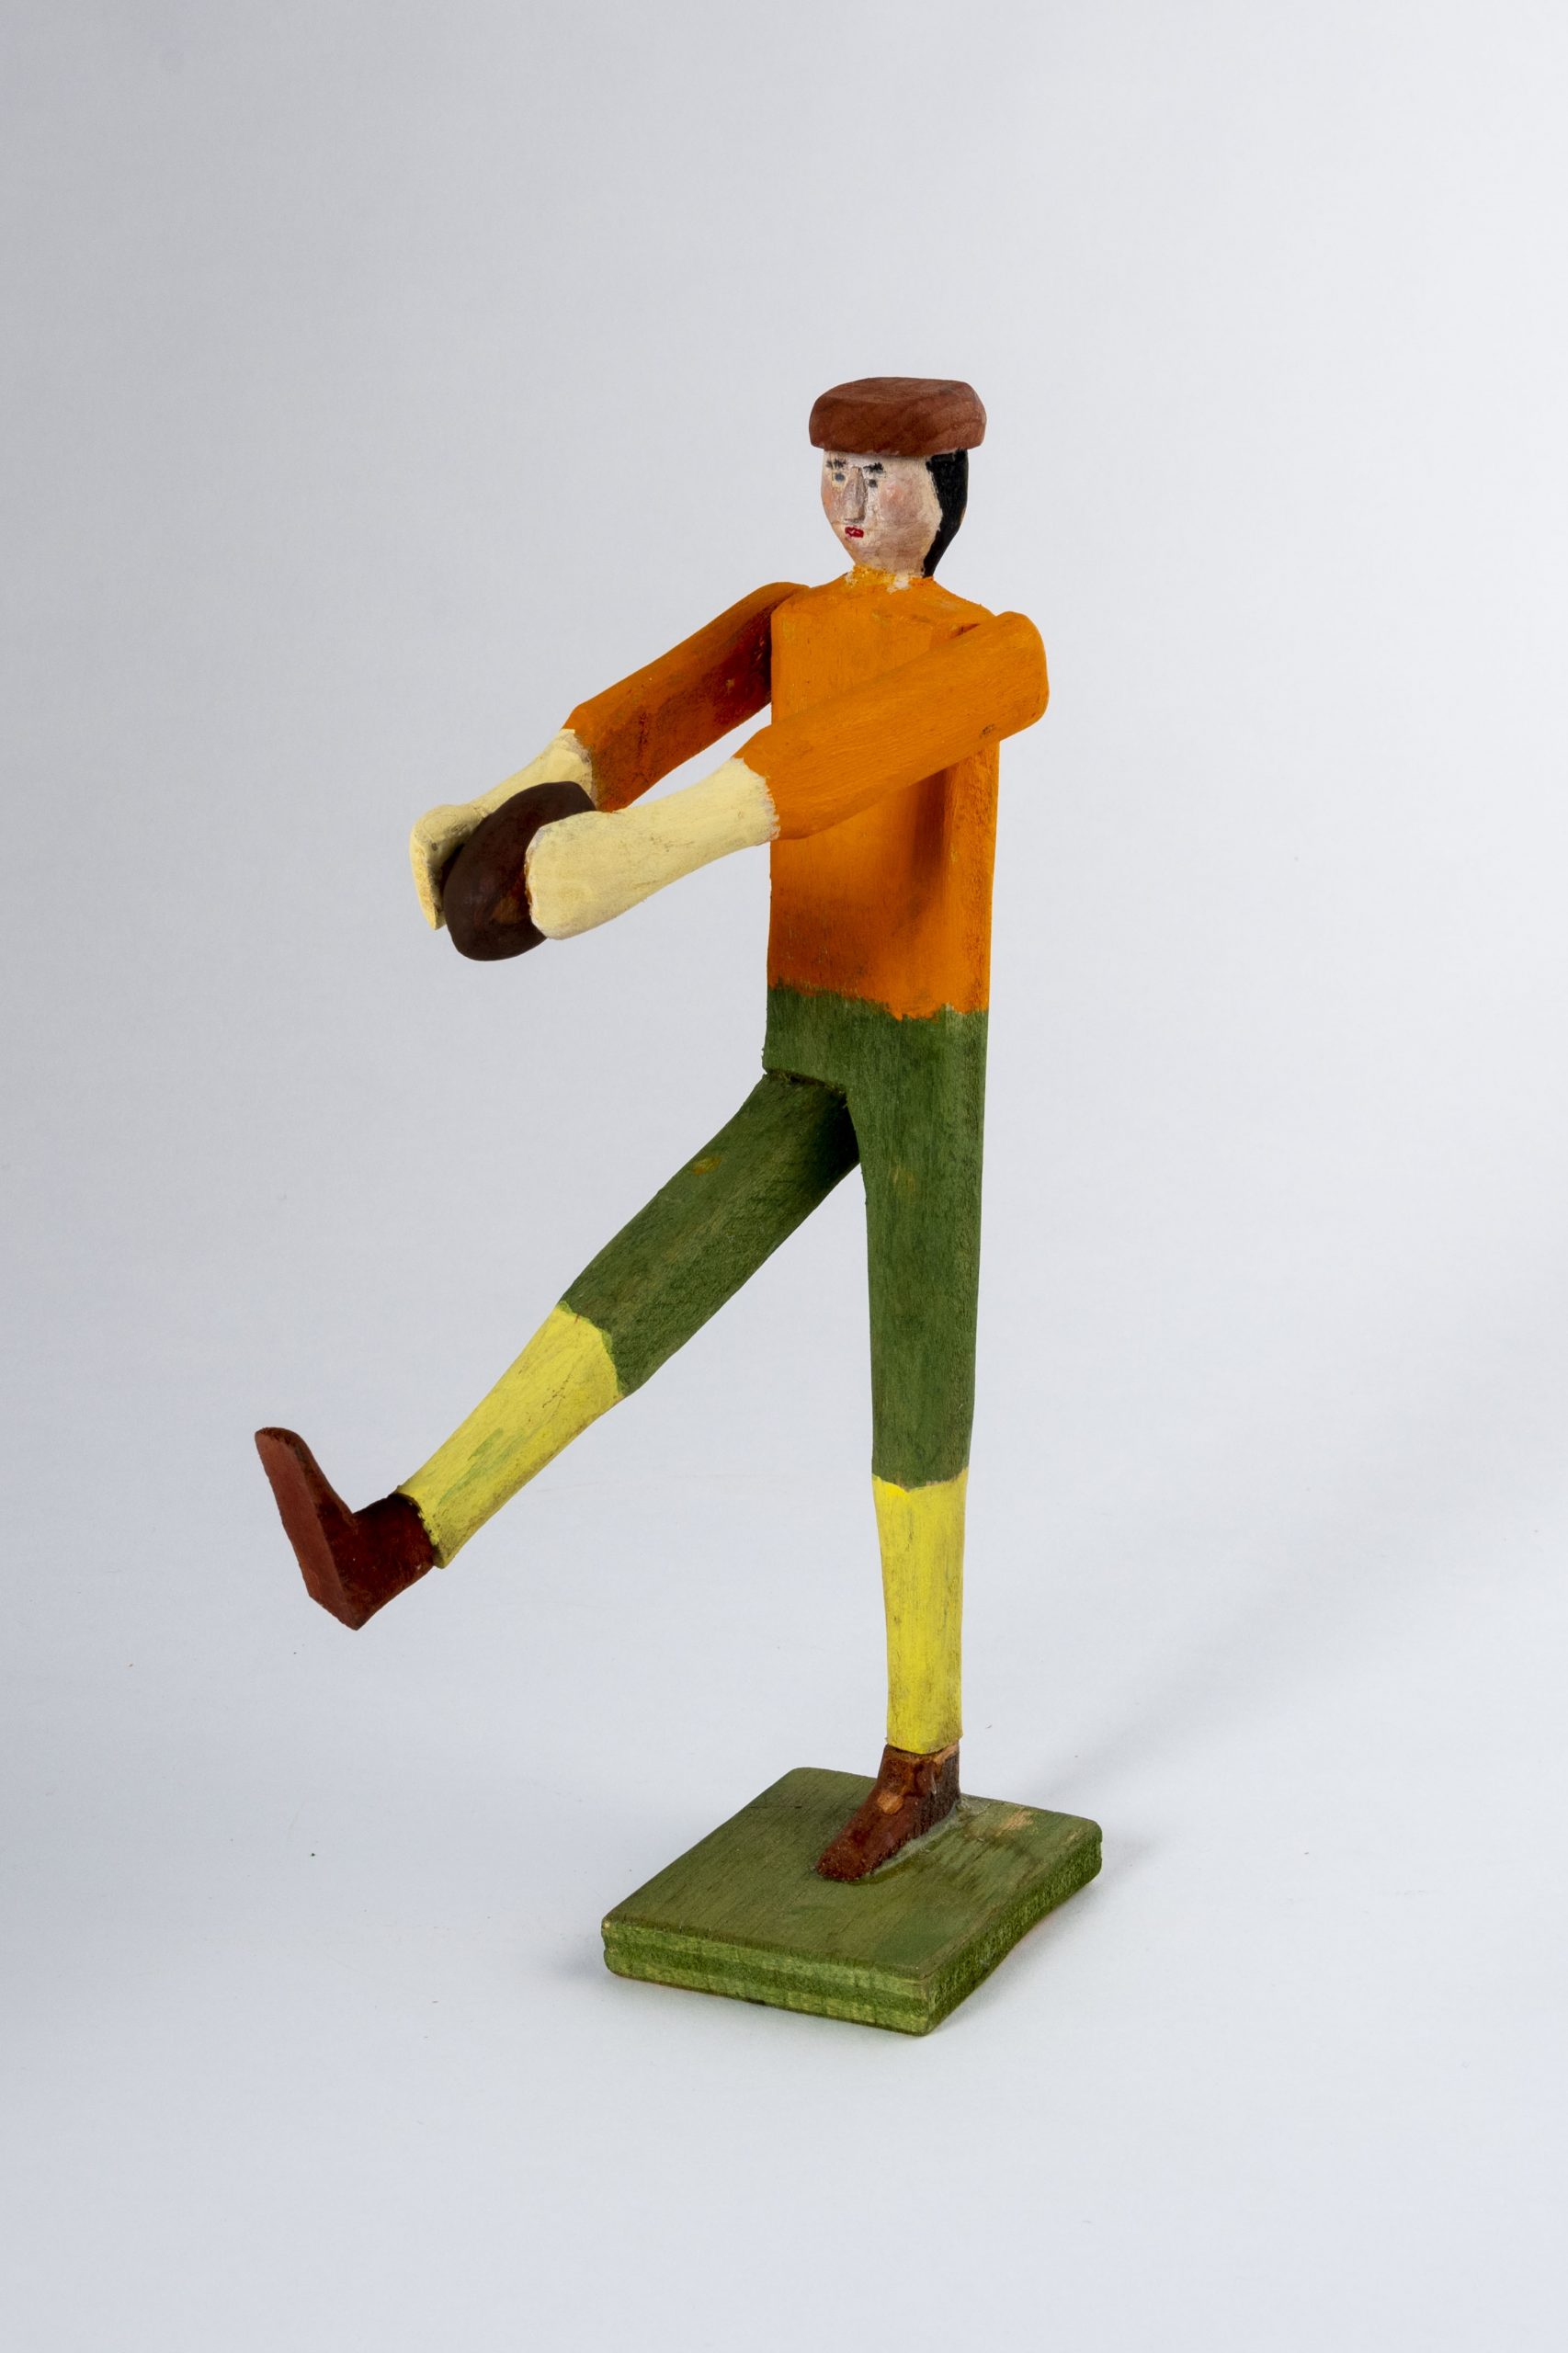 A folk art wooden sculpture of a football player kicking a ball